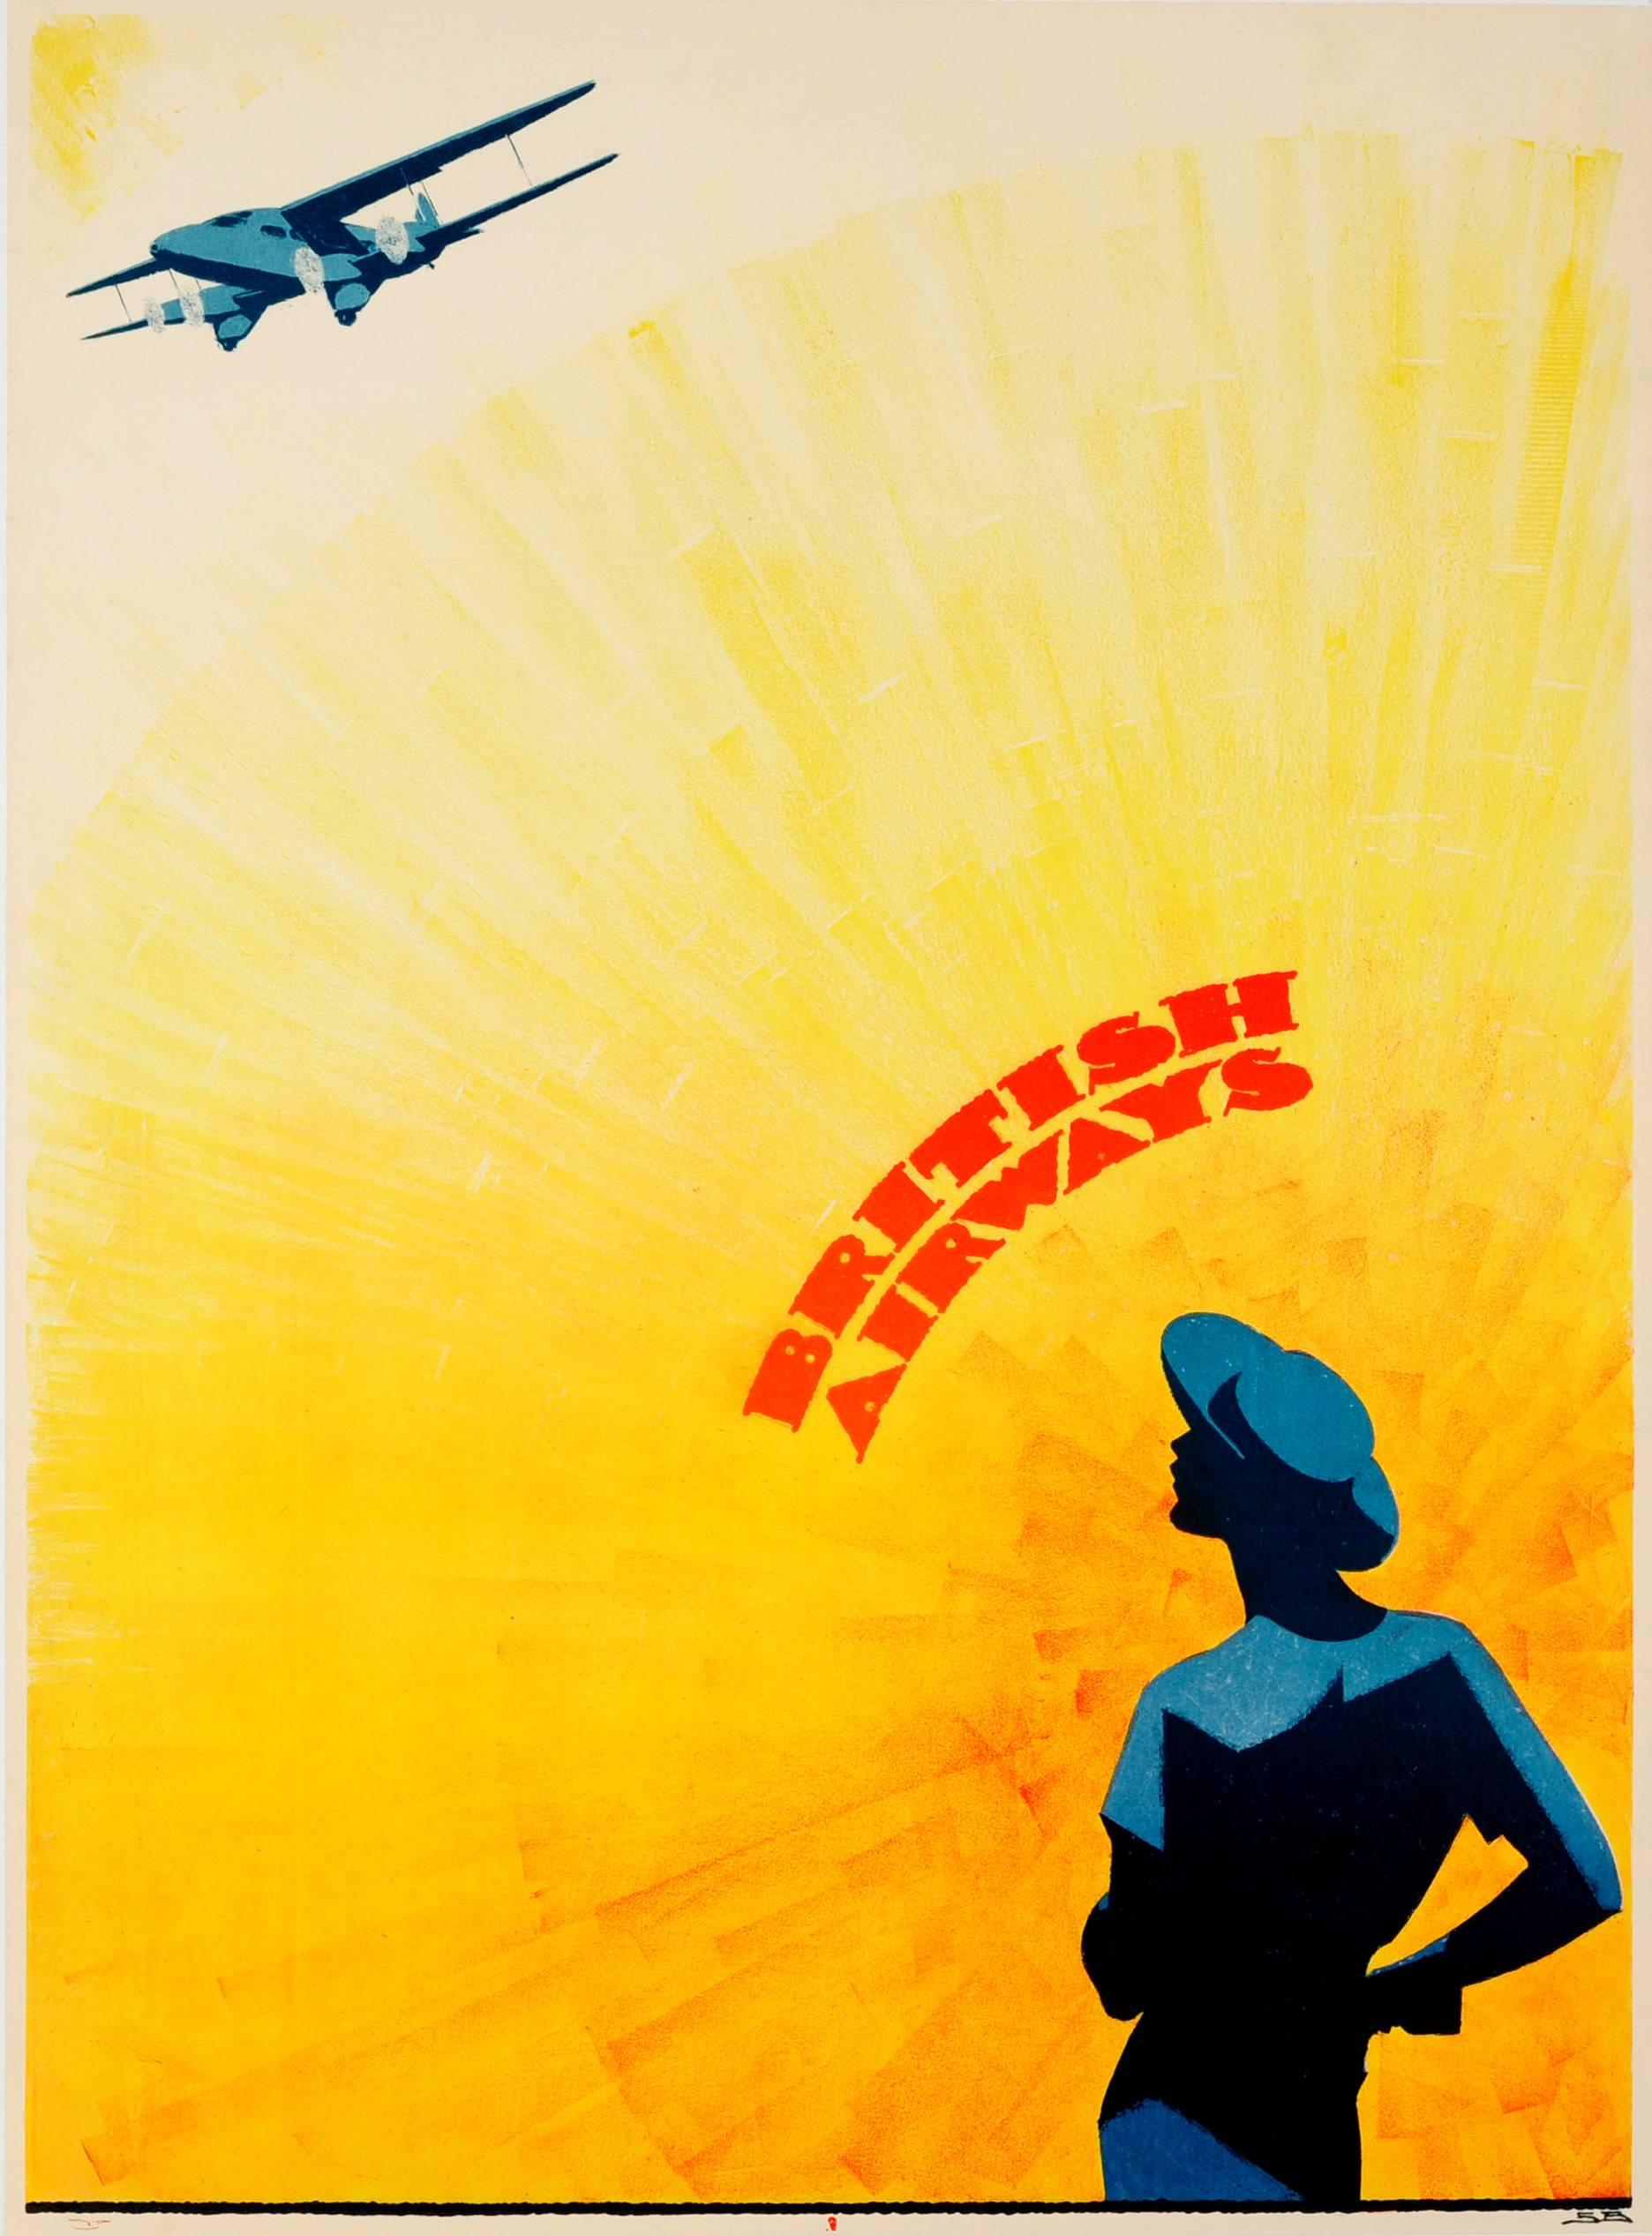 Sven Brasch Print - Original Vintage Art Deco Design Golden Age Of Travel Poster For British Airways